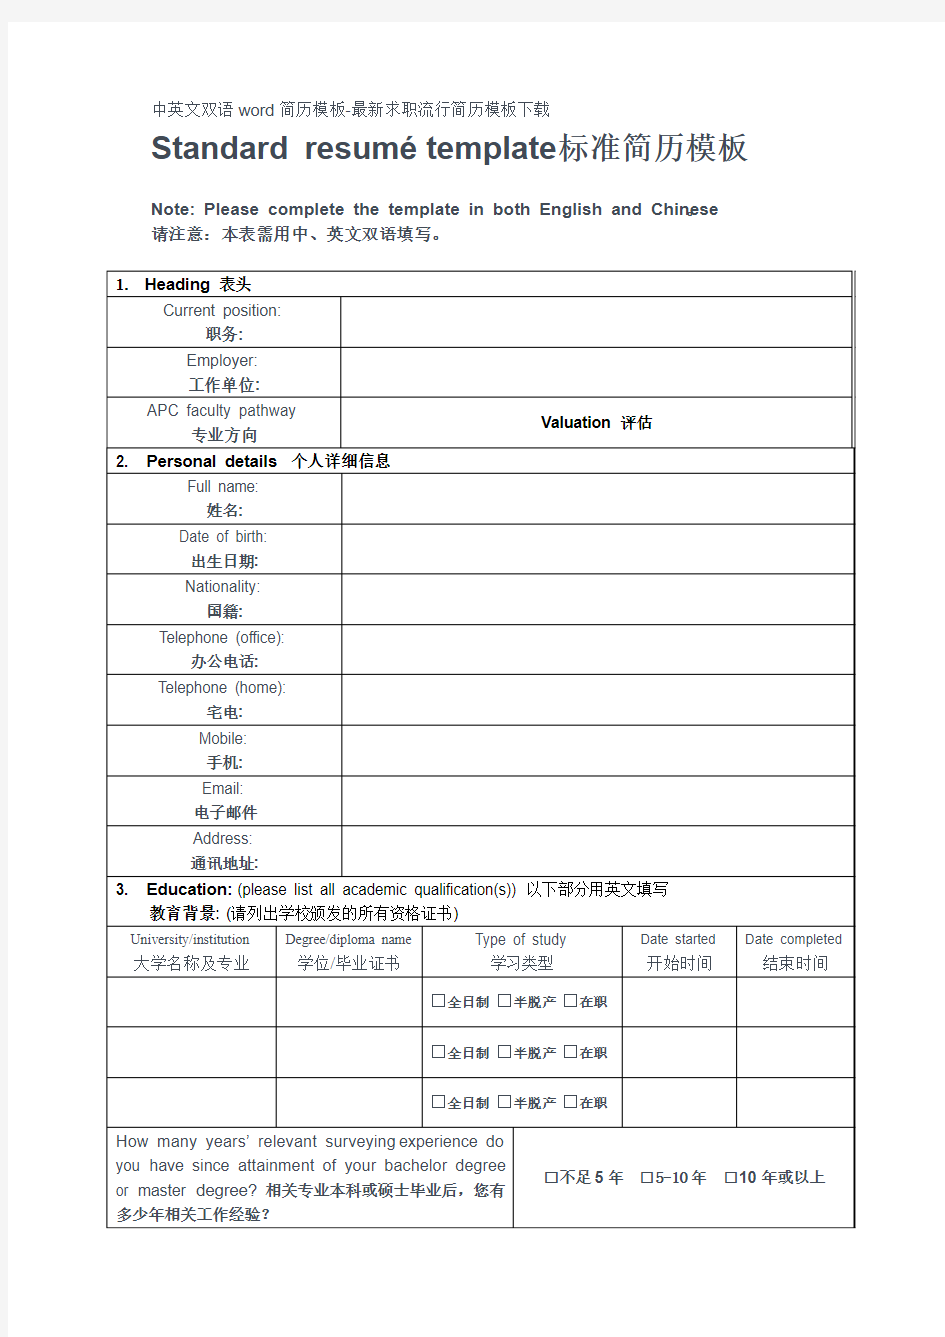 中英文双语简历模板最新求职简历模板下载